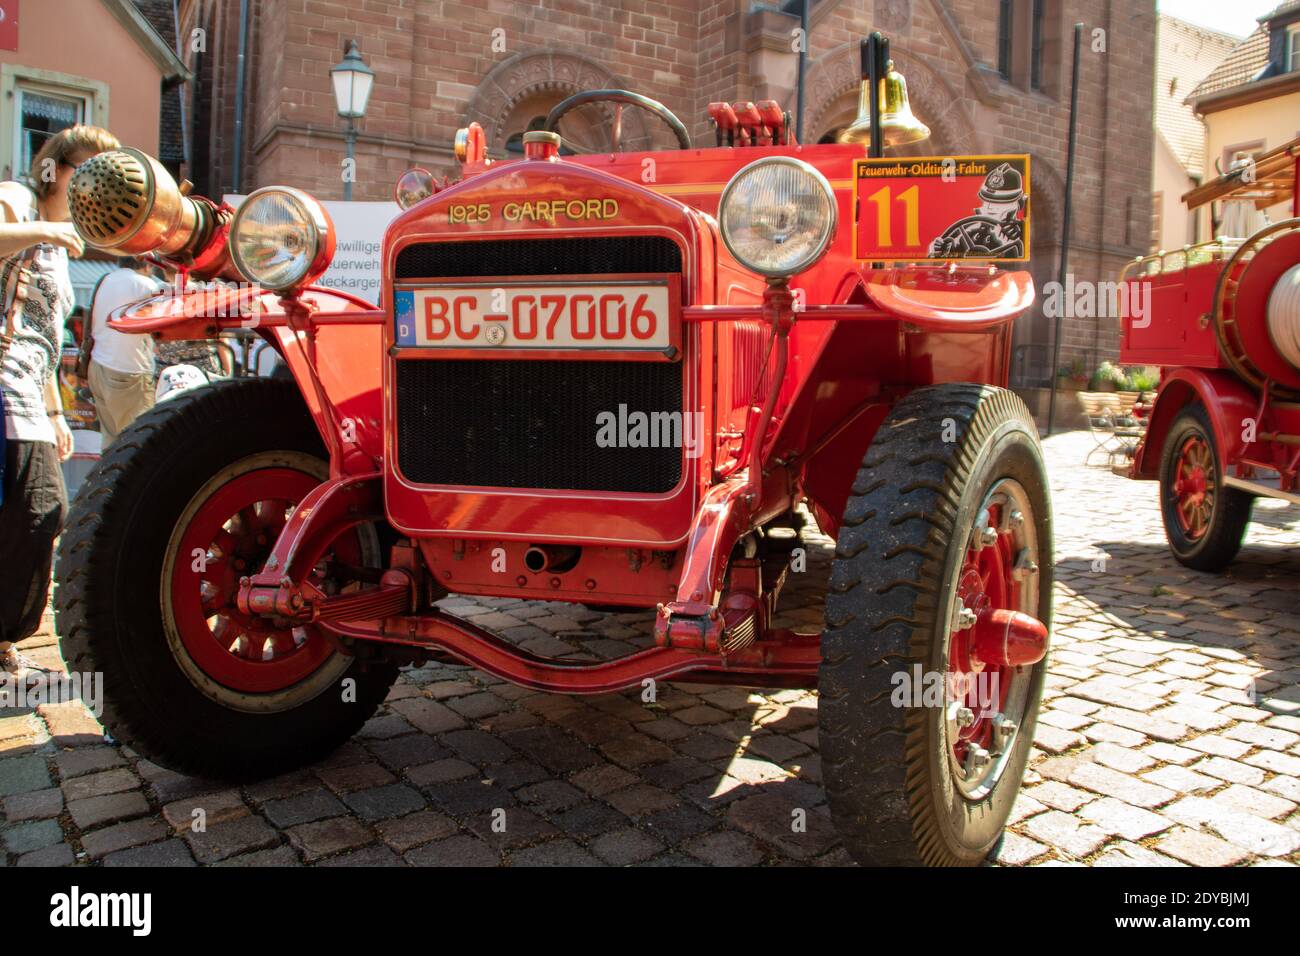 Neckargemuend, Allemagne: 16 juillet 2018: Exposition de vieux moteurs d'incendie historiques sur le marché de Neckargemünd, une petite ville du sud de l'Allemagne Banque D'Images